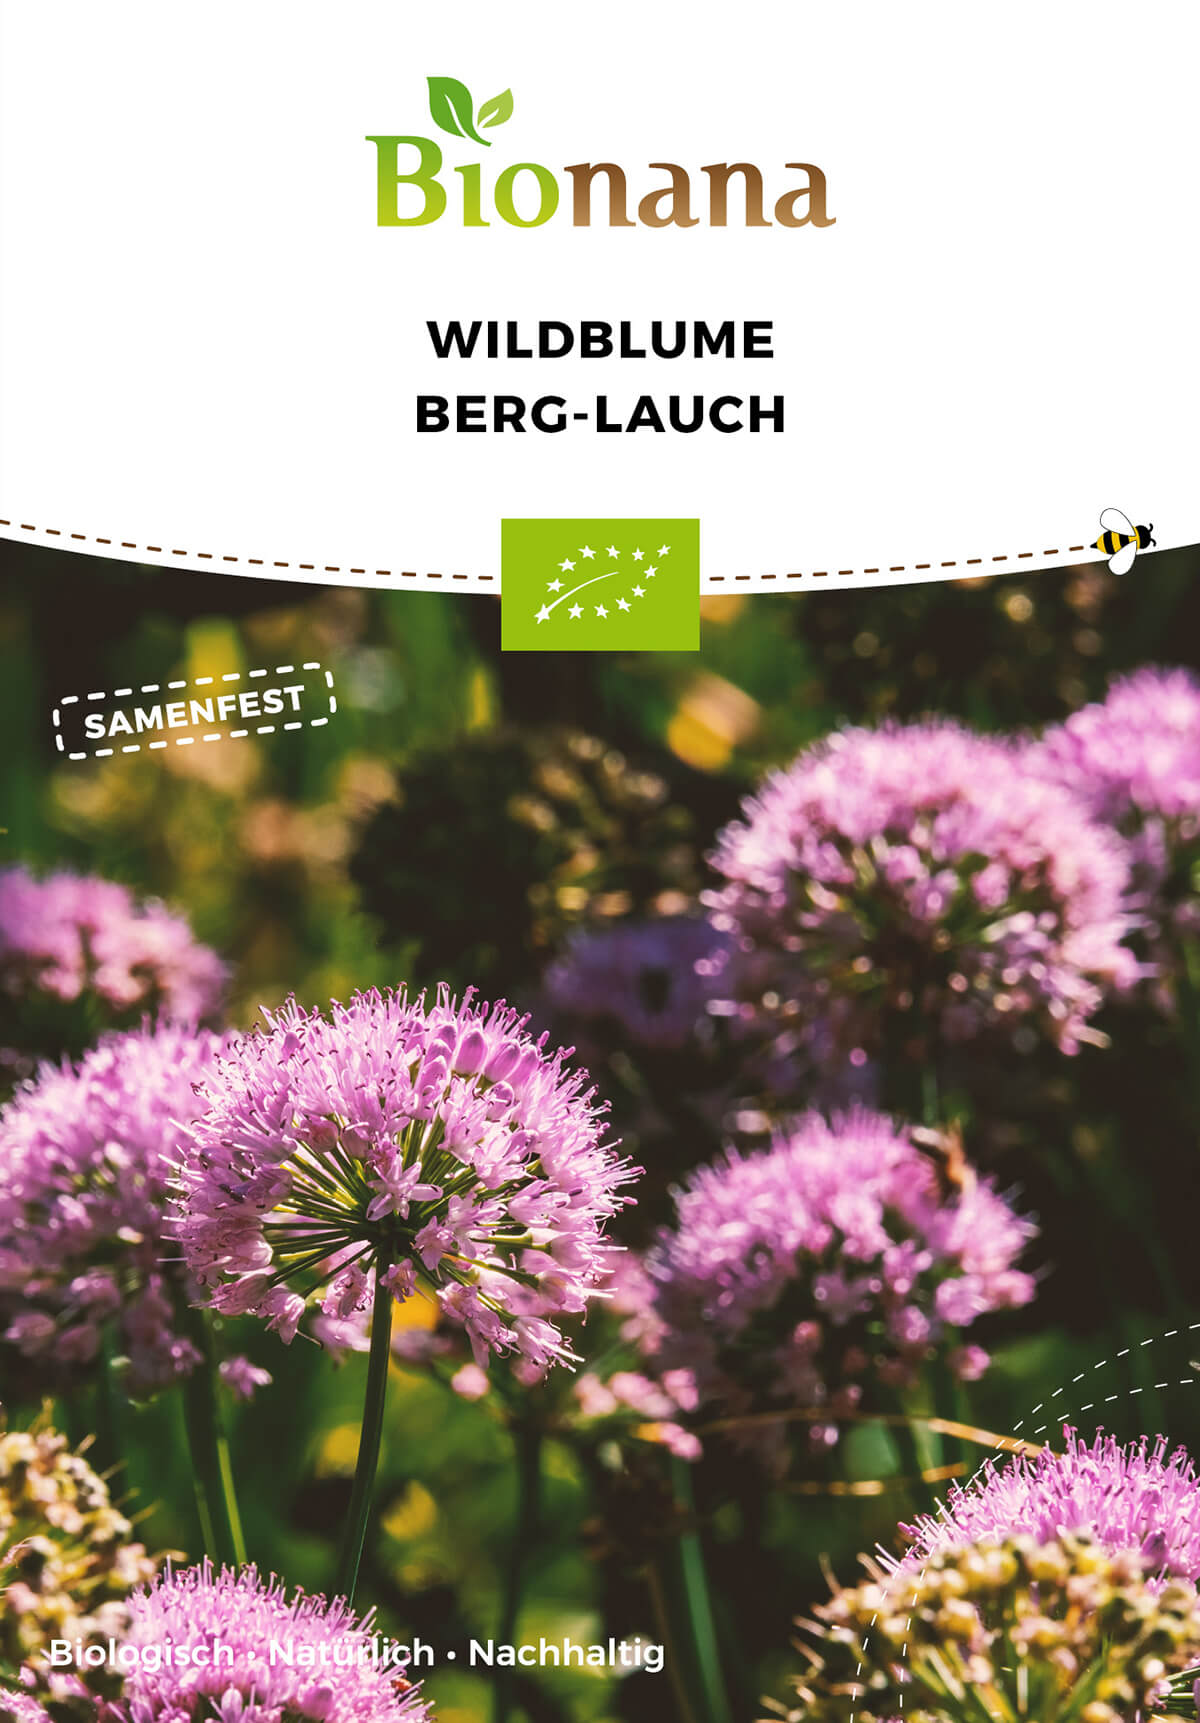 Wildblume Berg-Lauch | BIO Wildblumensamen von Bionana